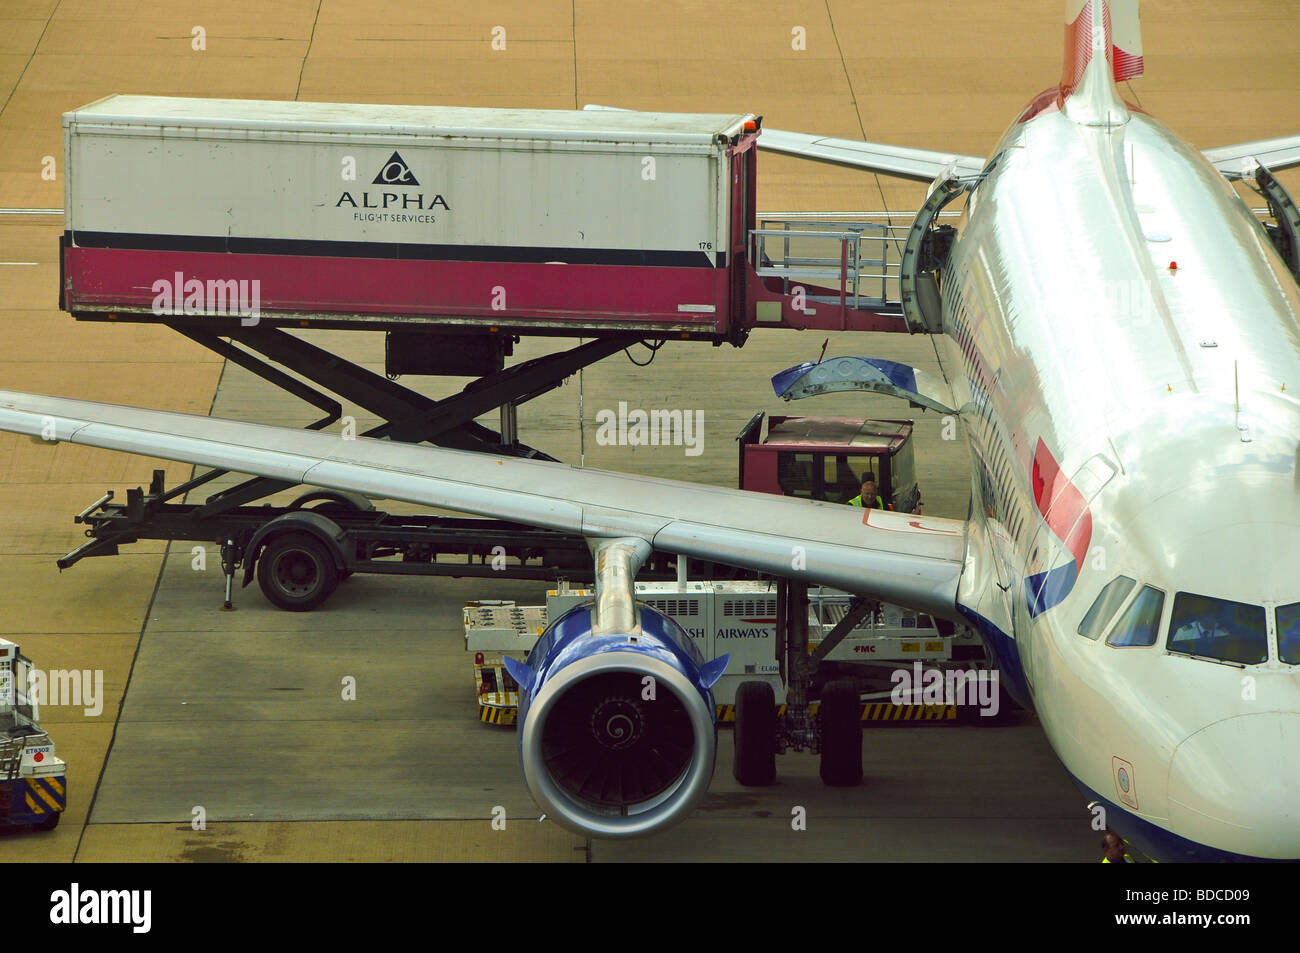 British Airways Flugzeug verladen von Alpha Flight Services am Flughafen Gatwick, London, England Stockfoto